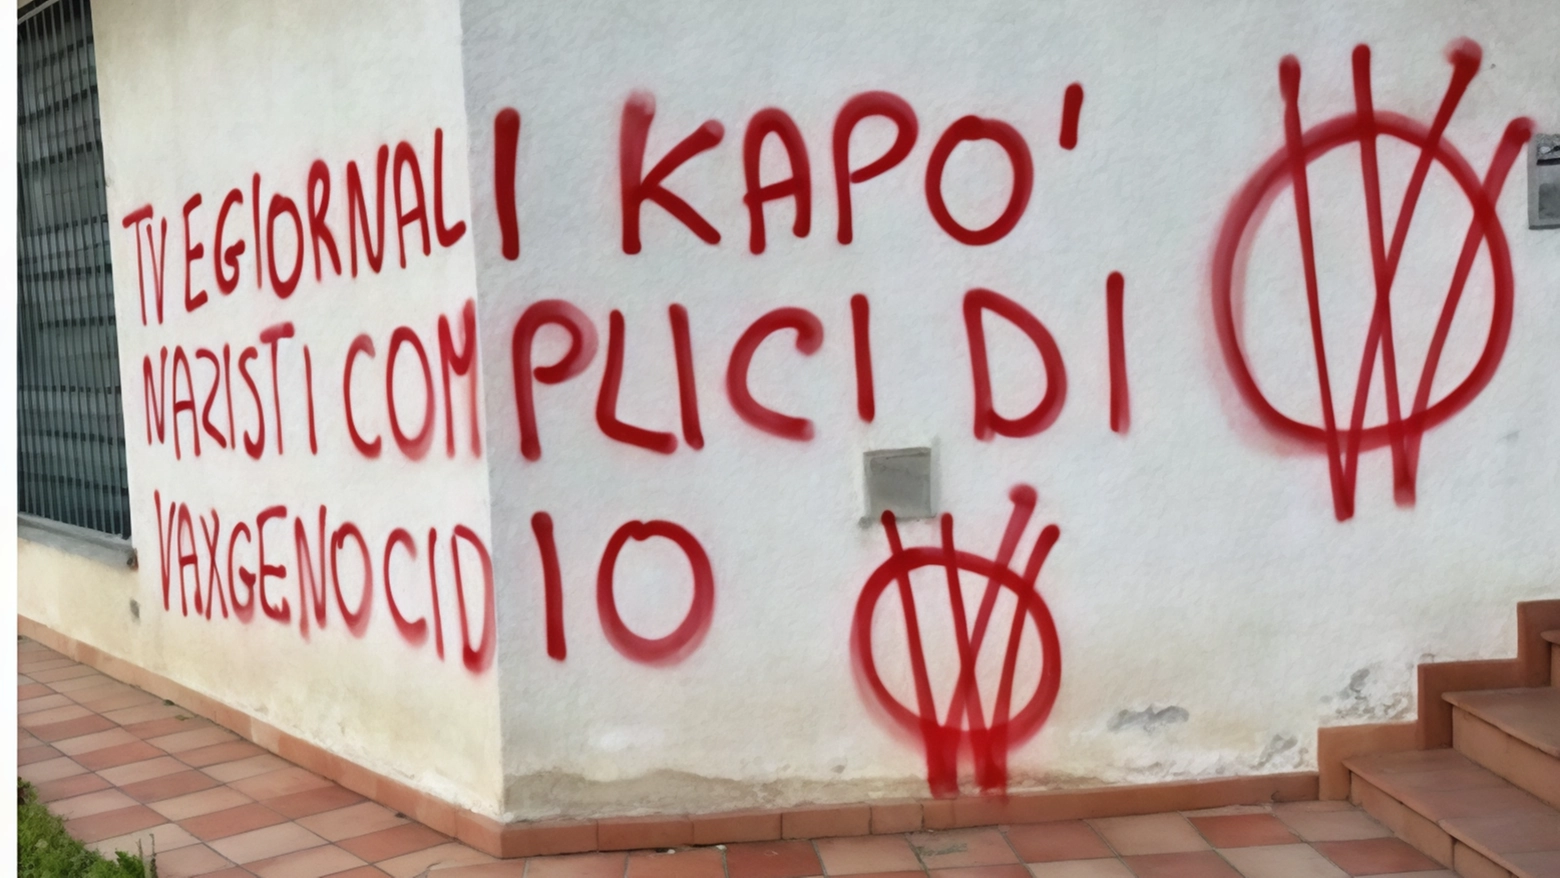 Sedi del Partito Democratico e di VareseNews vandalizzate dai no vax a Malnate e Gazzada Schianno. Condanne e preoccupazione da parte delle autorità locali e politiche.